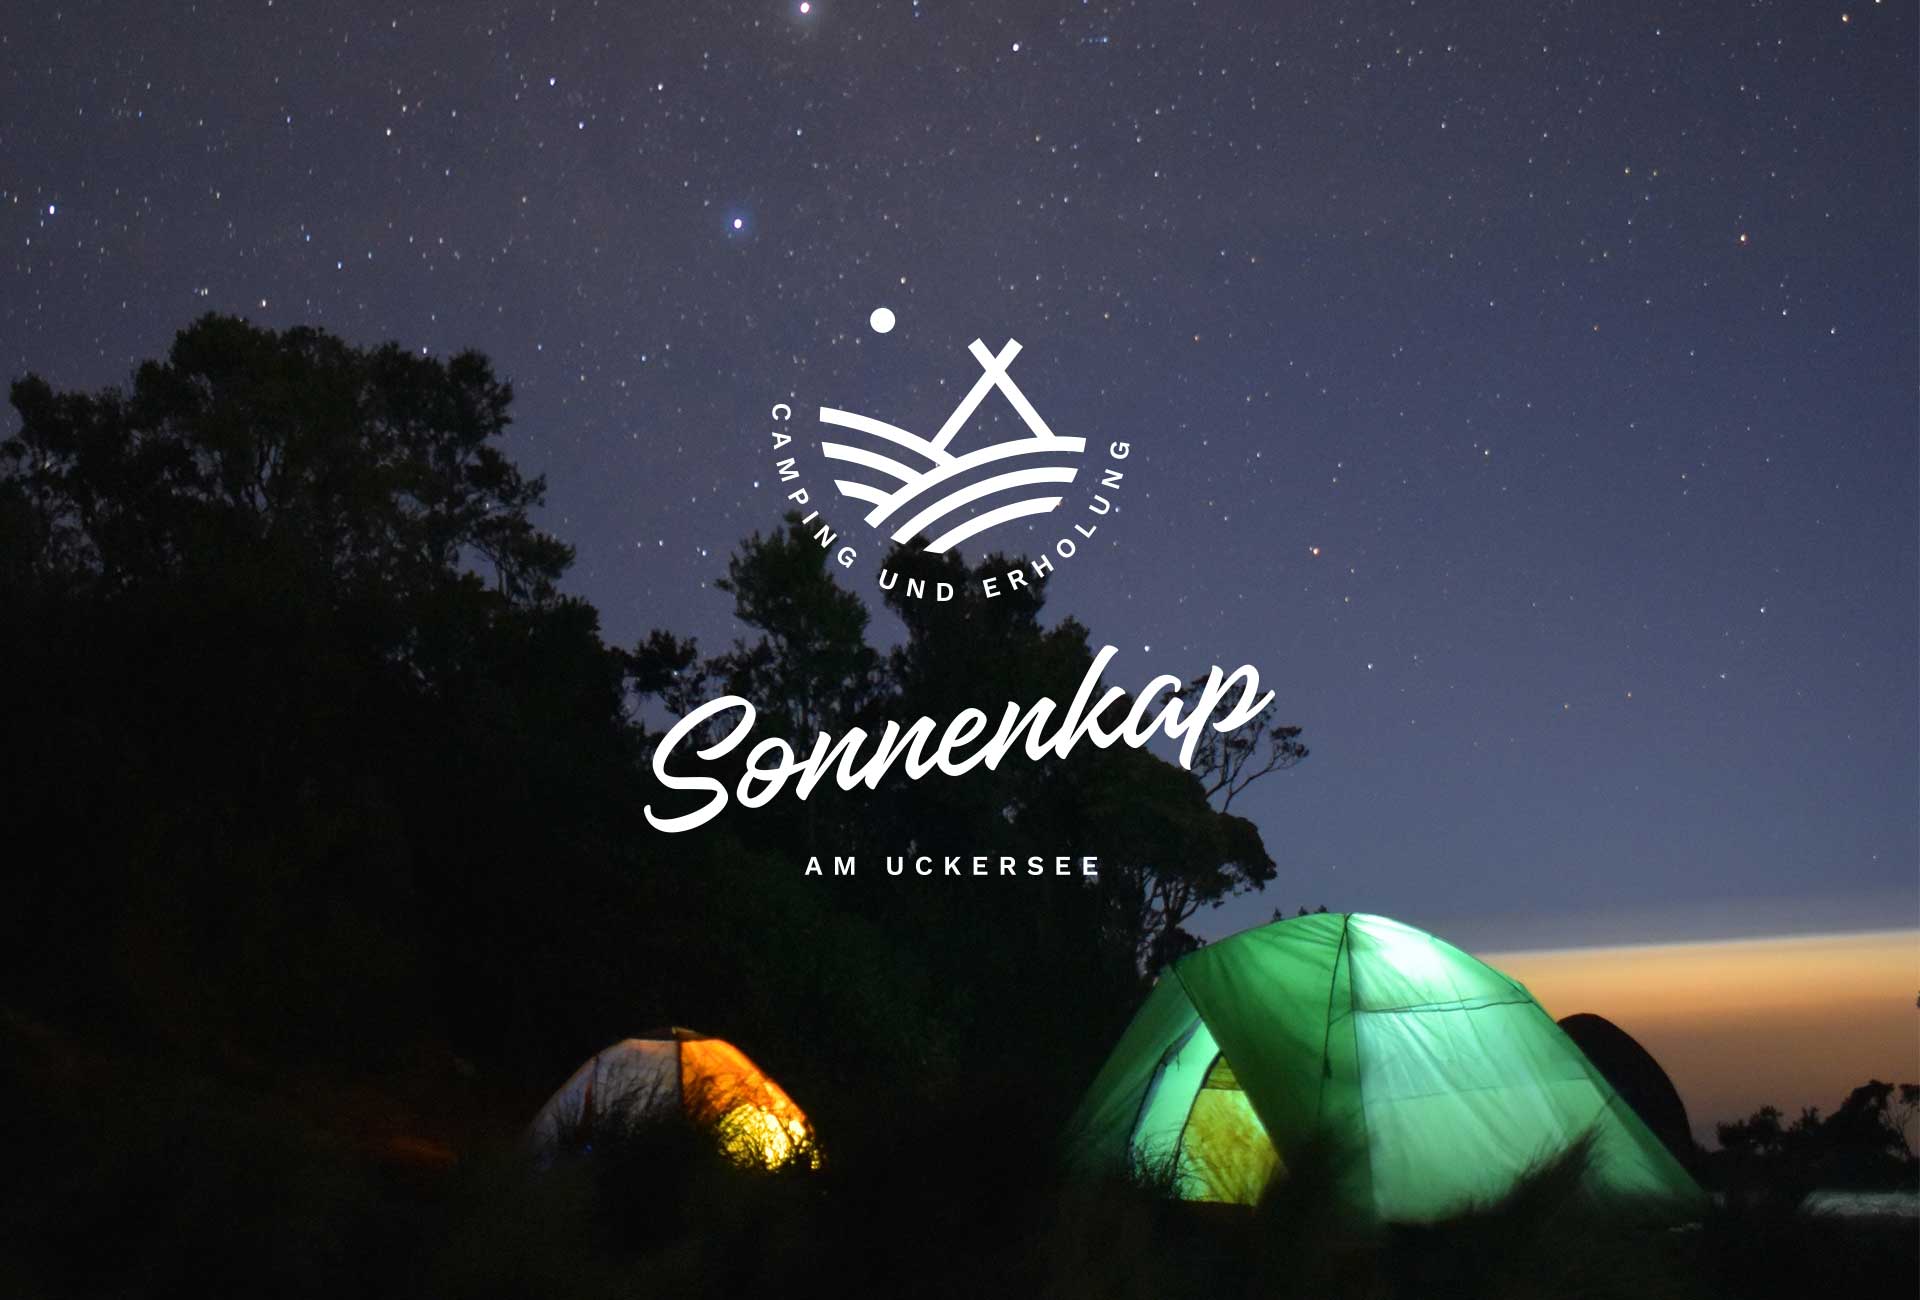 Logogestaltung — Naming, Markendesign und Markentwicklung für Campingplatz Sonnenkap in der Uckermark von Susann Ihlenfeld